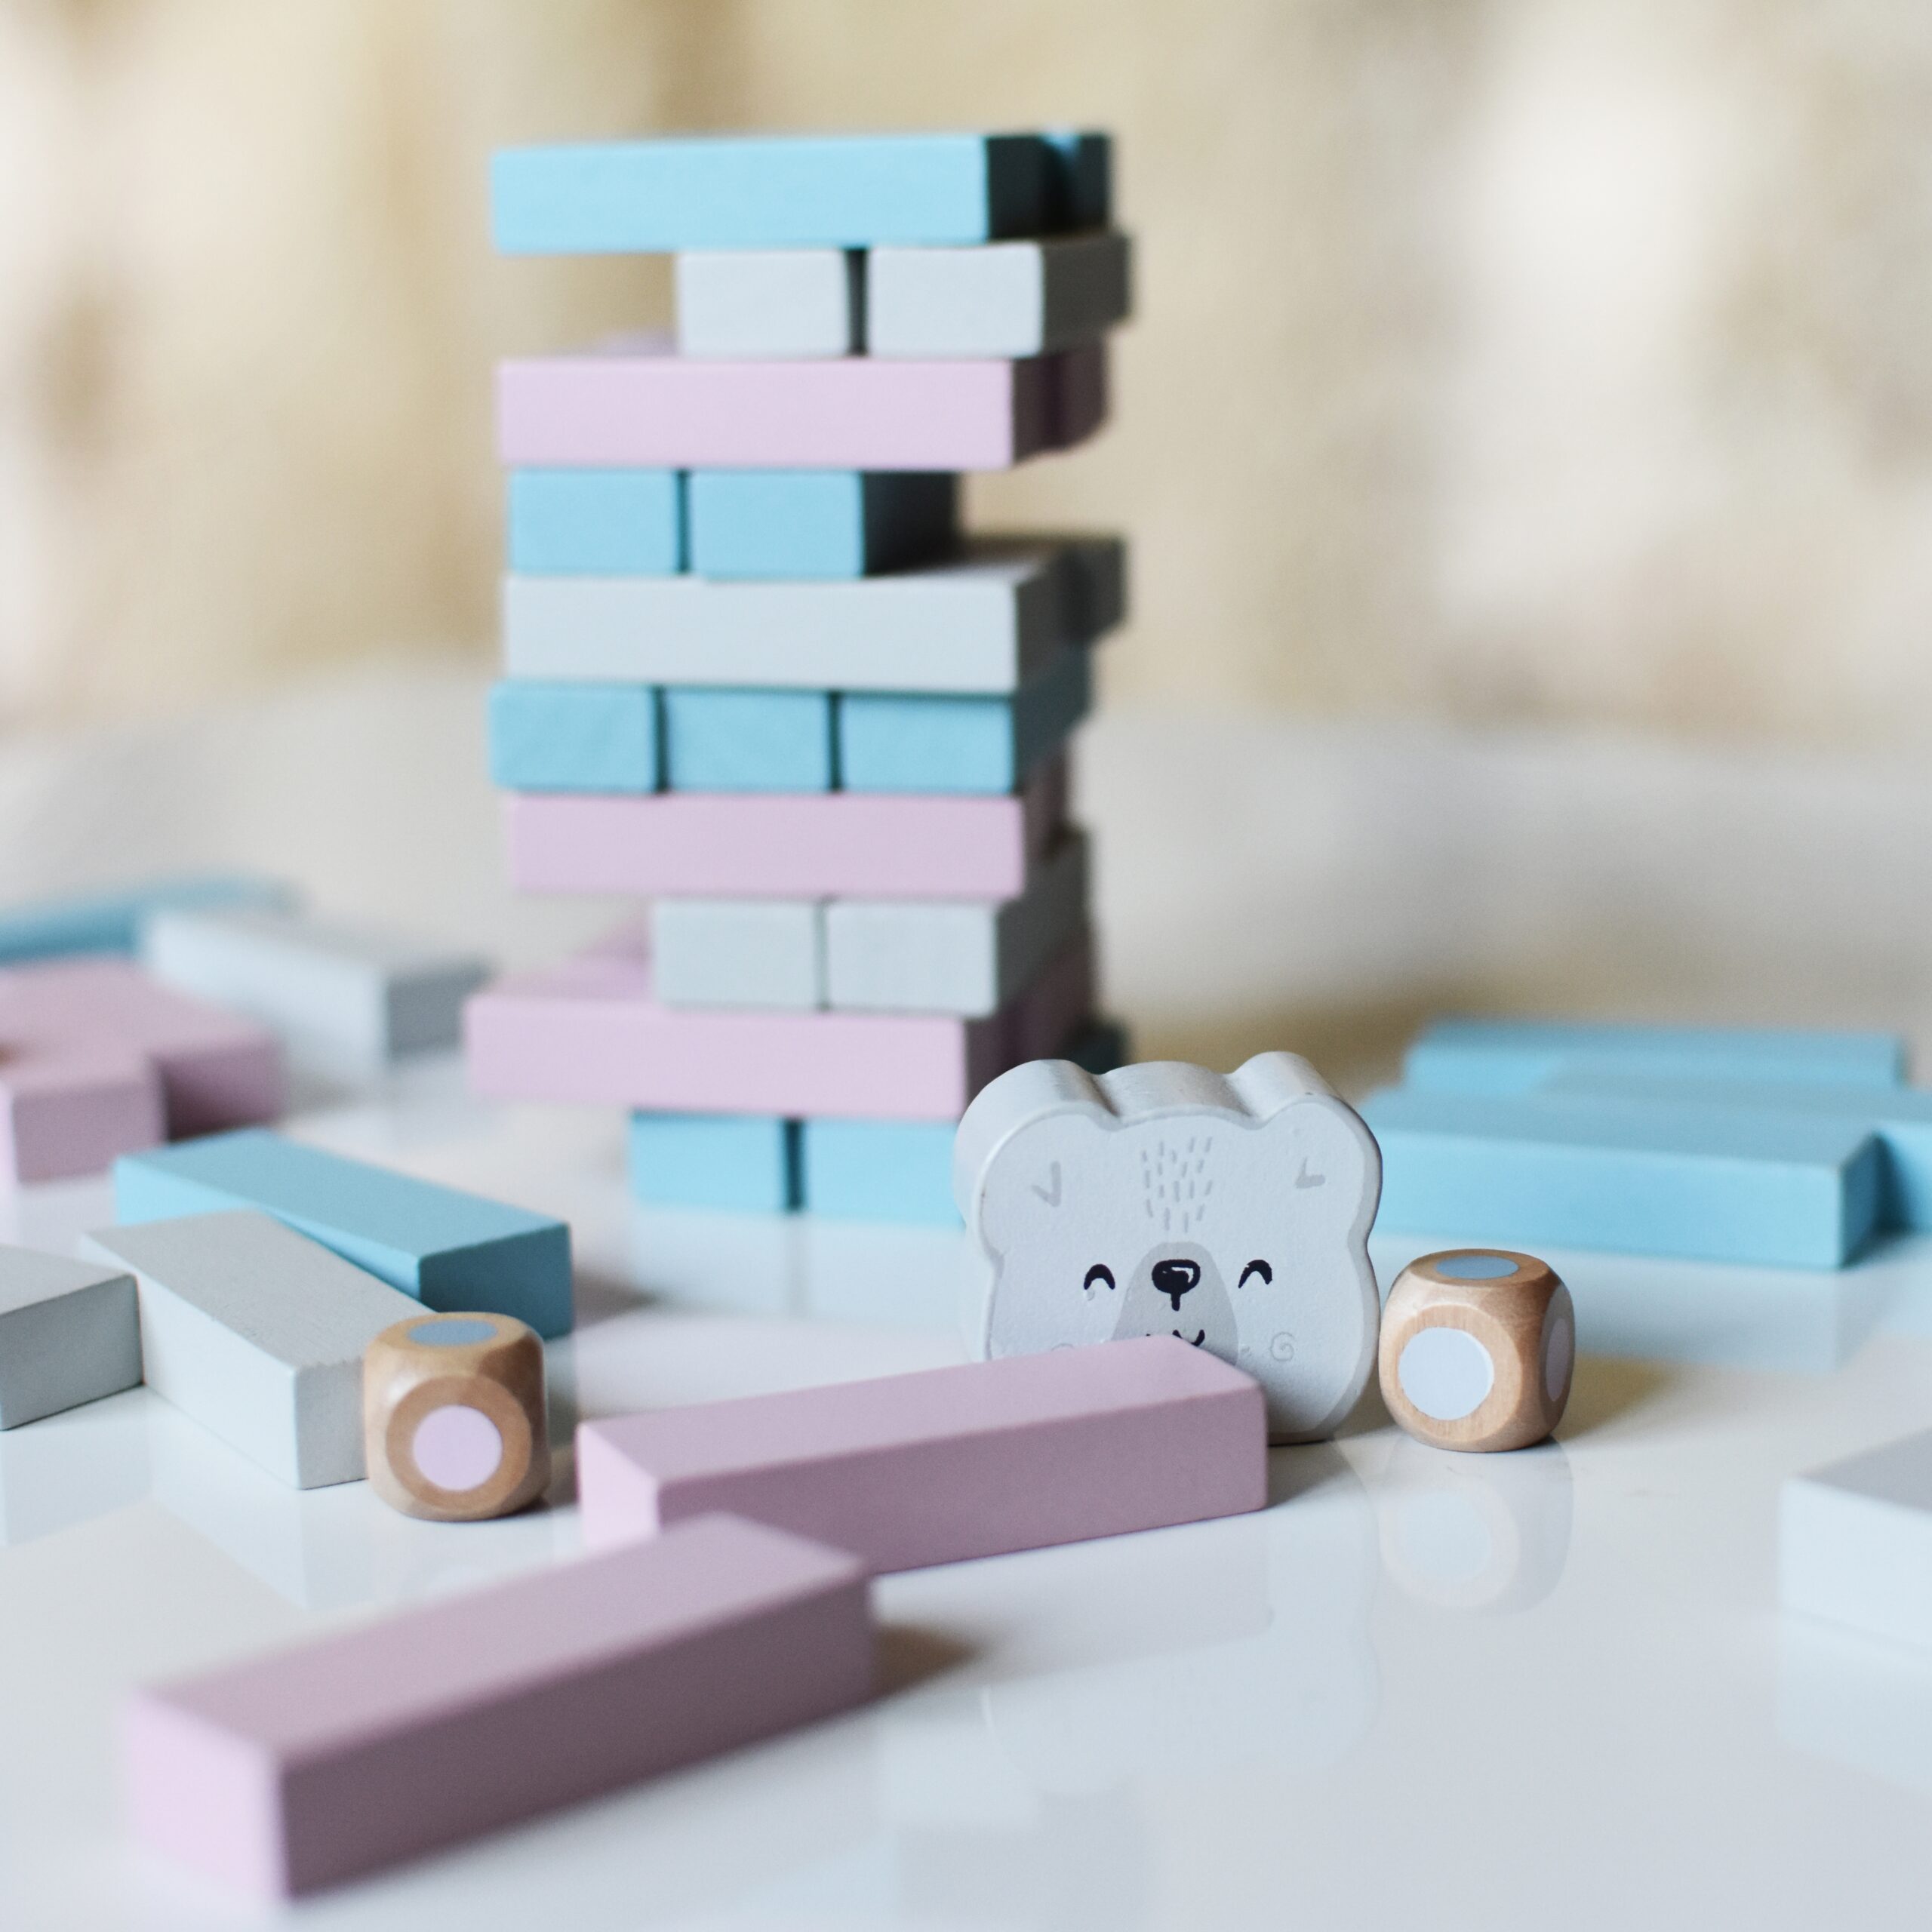 Drewniana gra wieża układanka pastelowa, zabawka dla dzieci, Viga PolarB